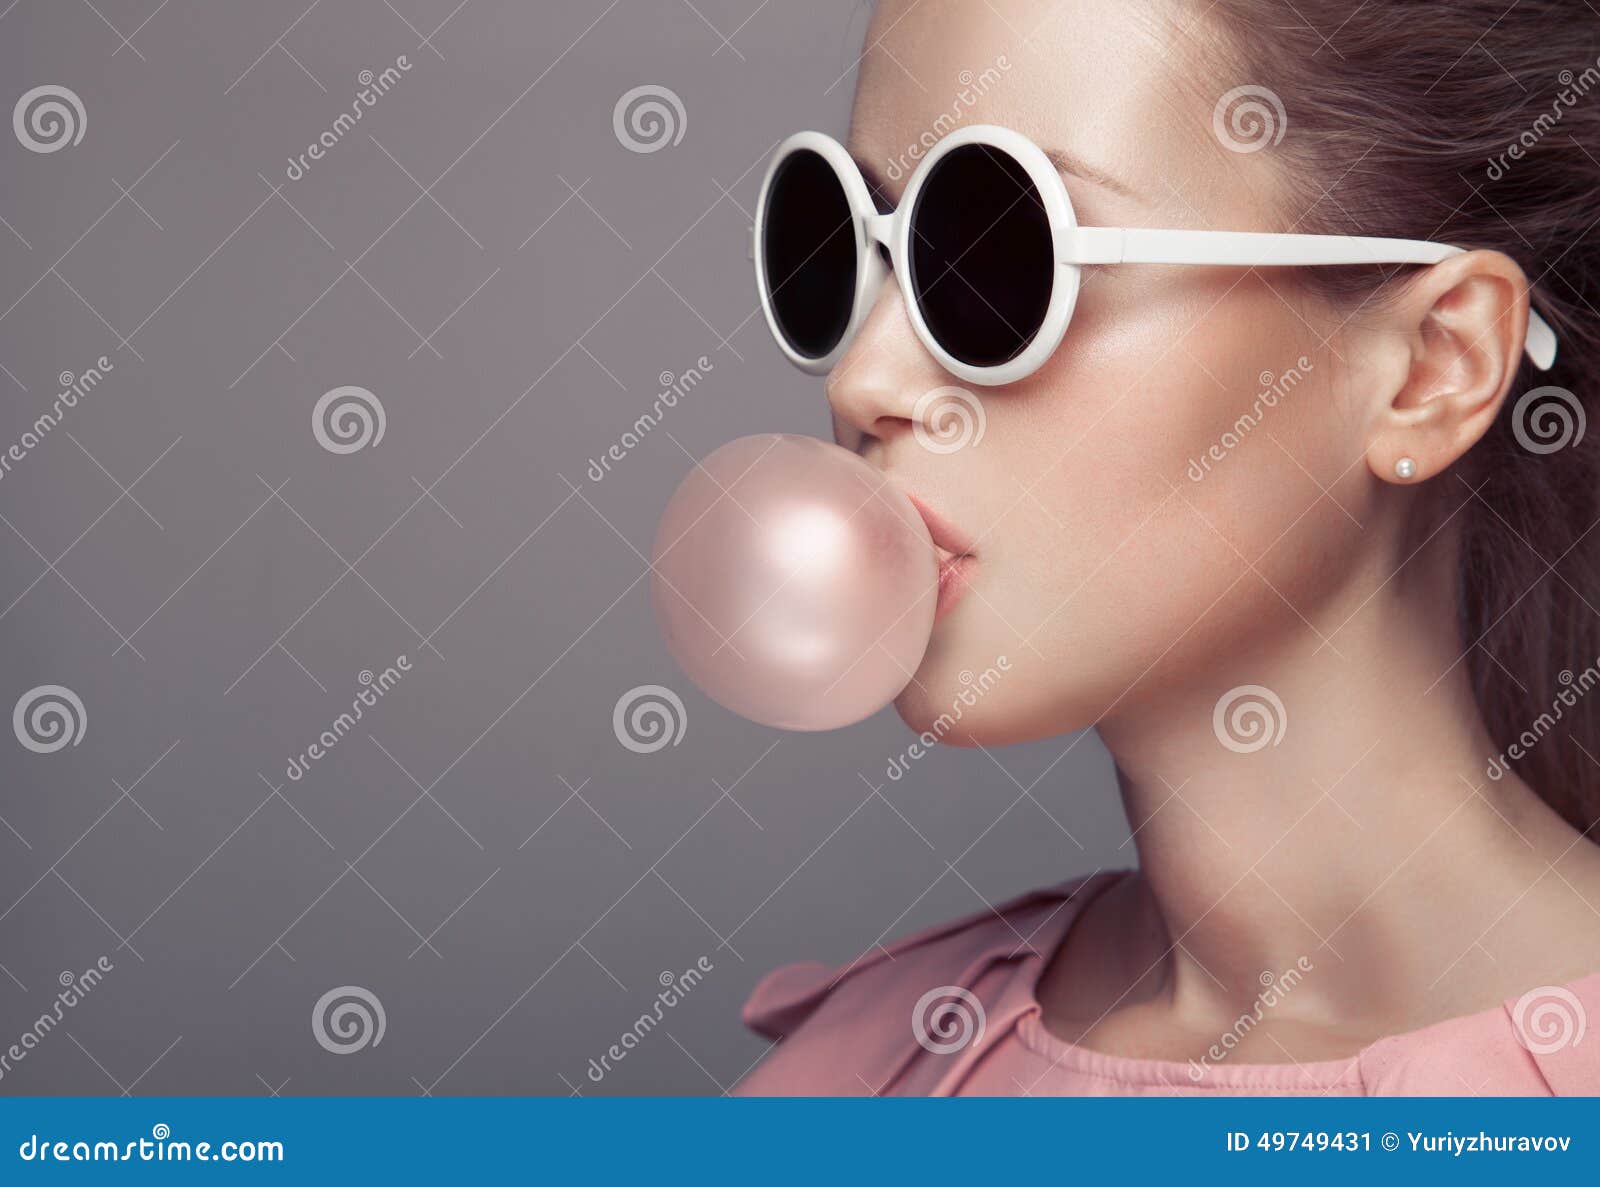 beautiful blonde woman blowing bubble gum. fashion portrait.